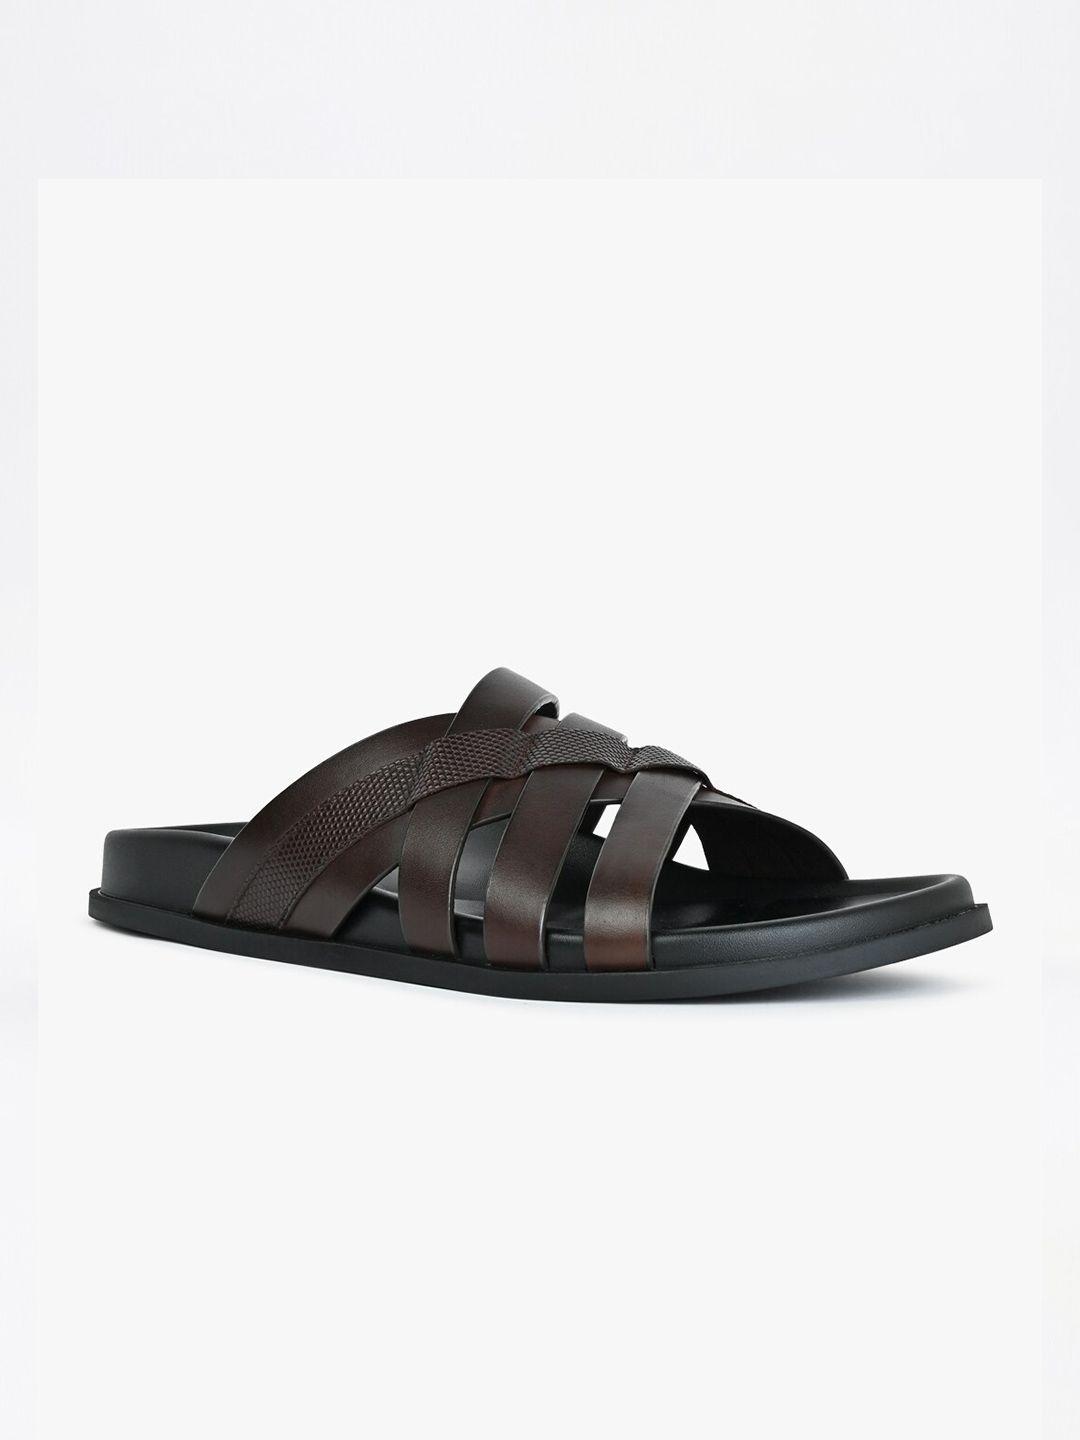 aldo men eze textured leather comfort sandals